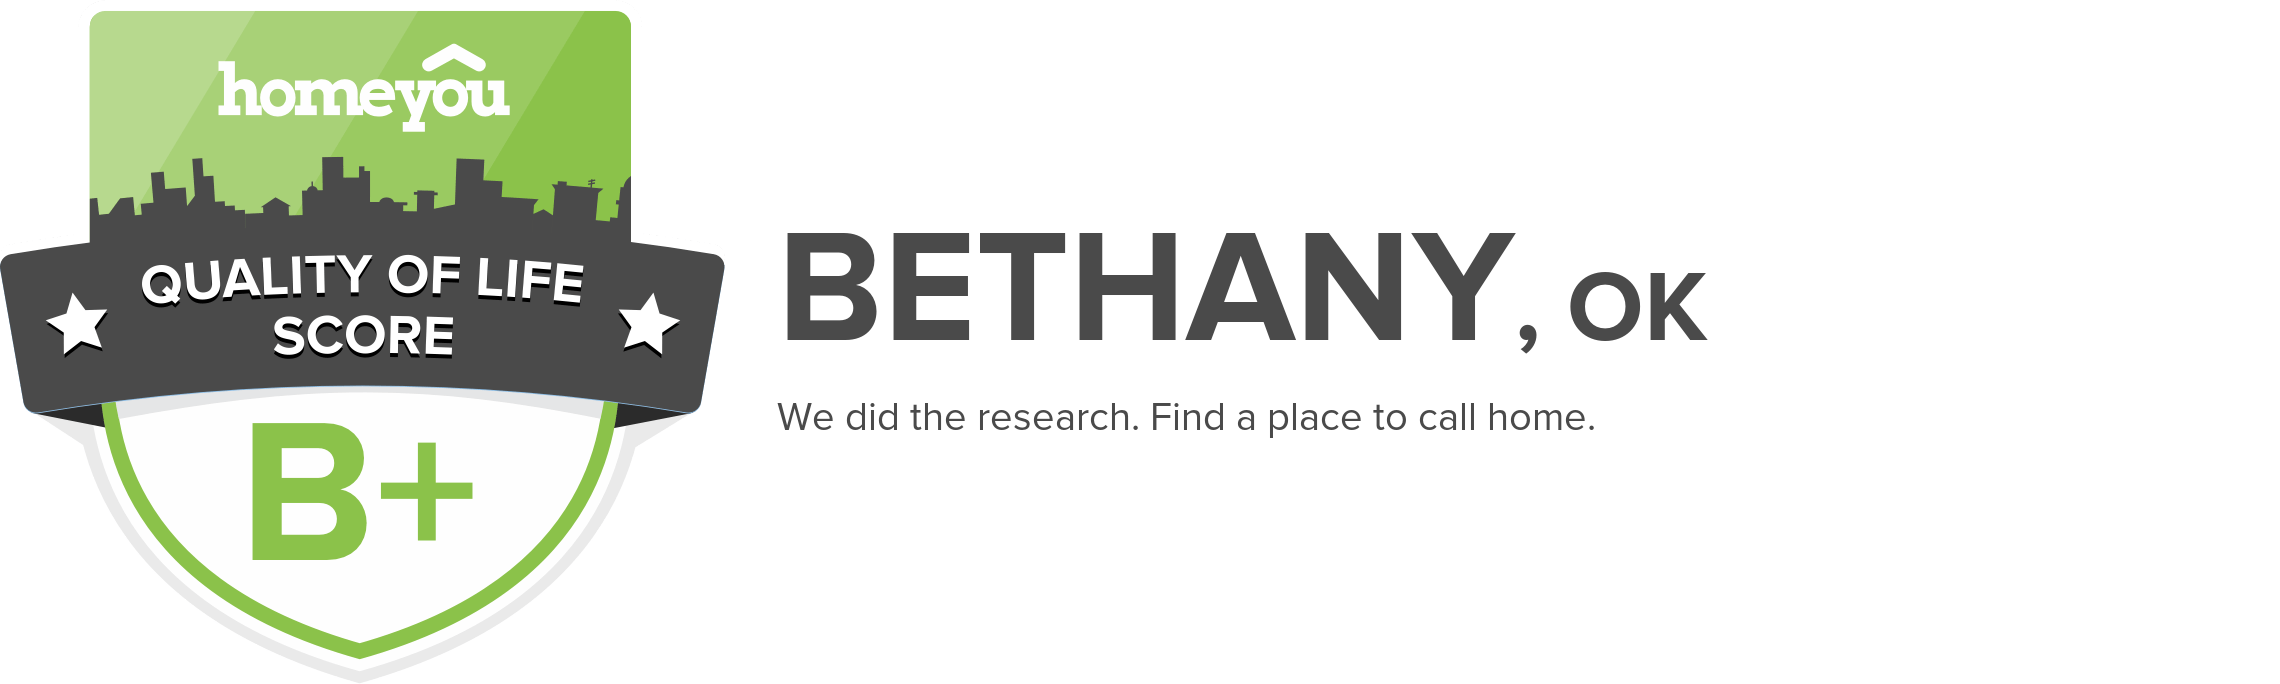 Bethany, OK